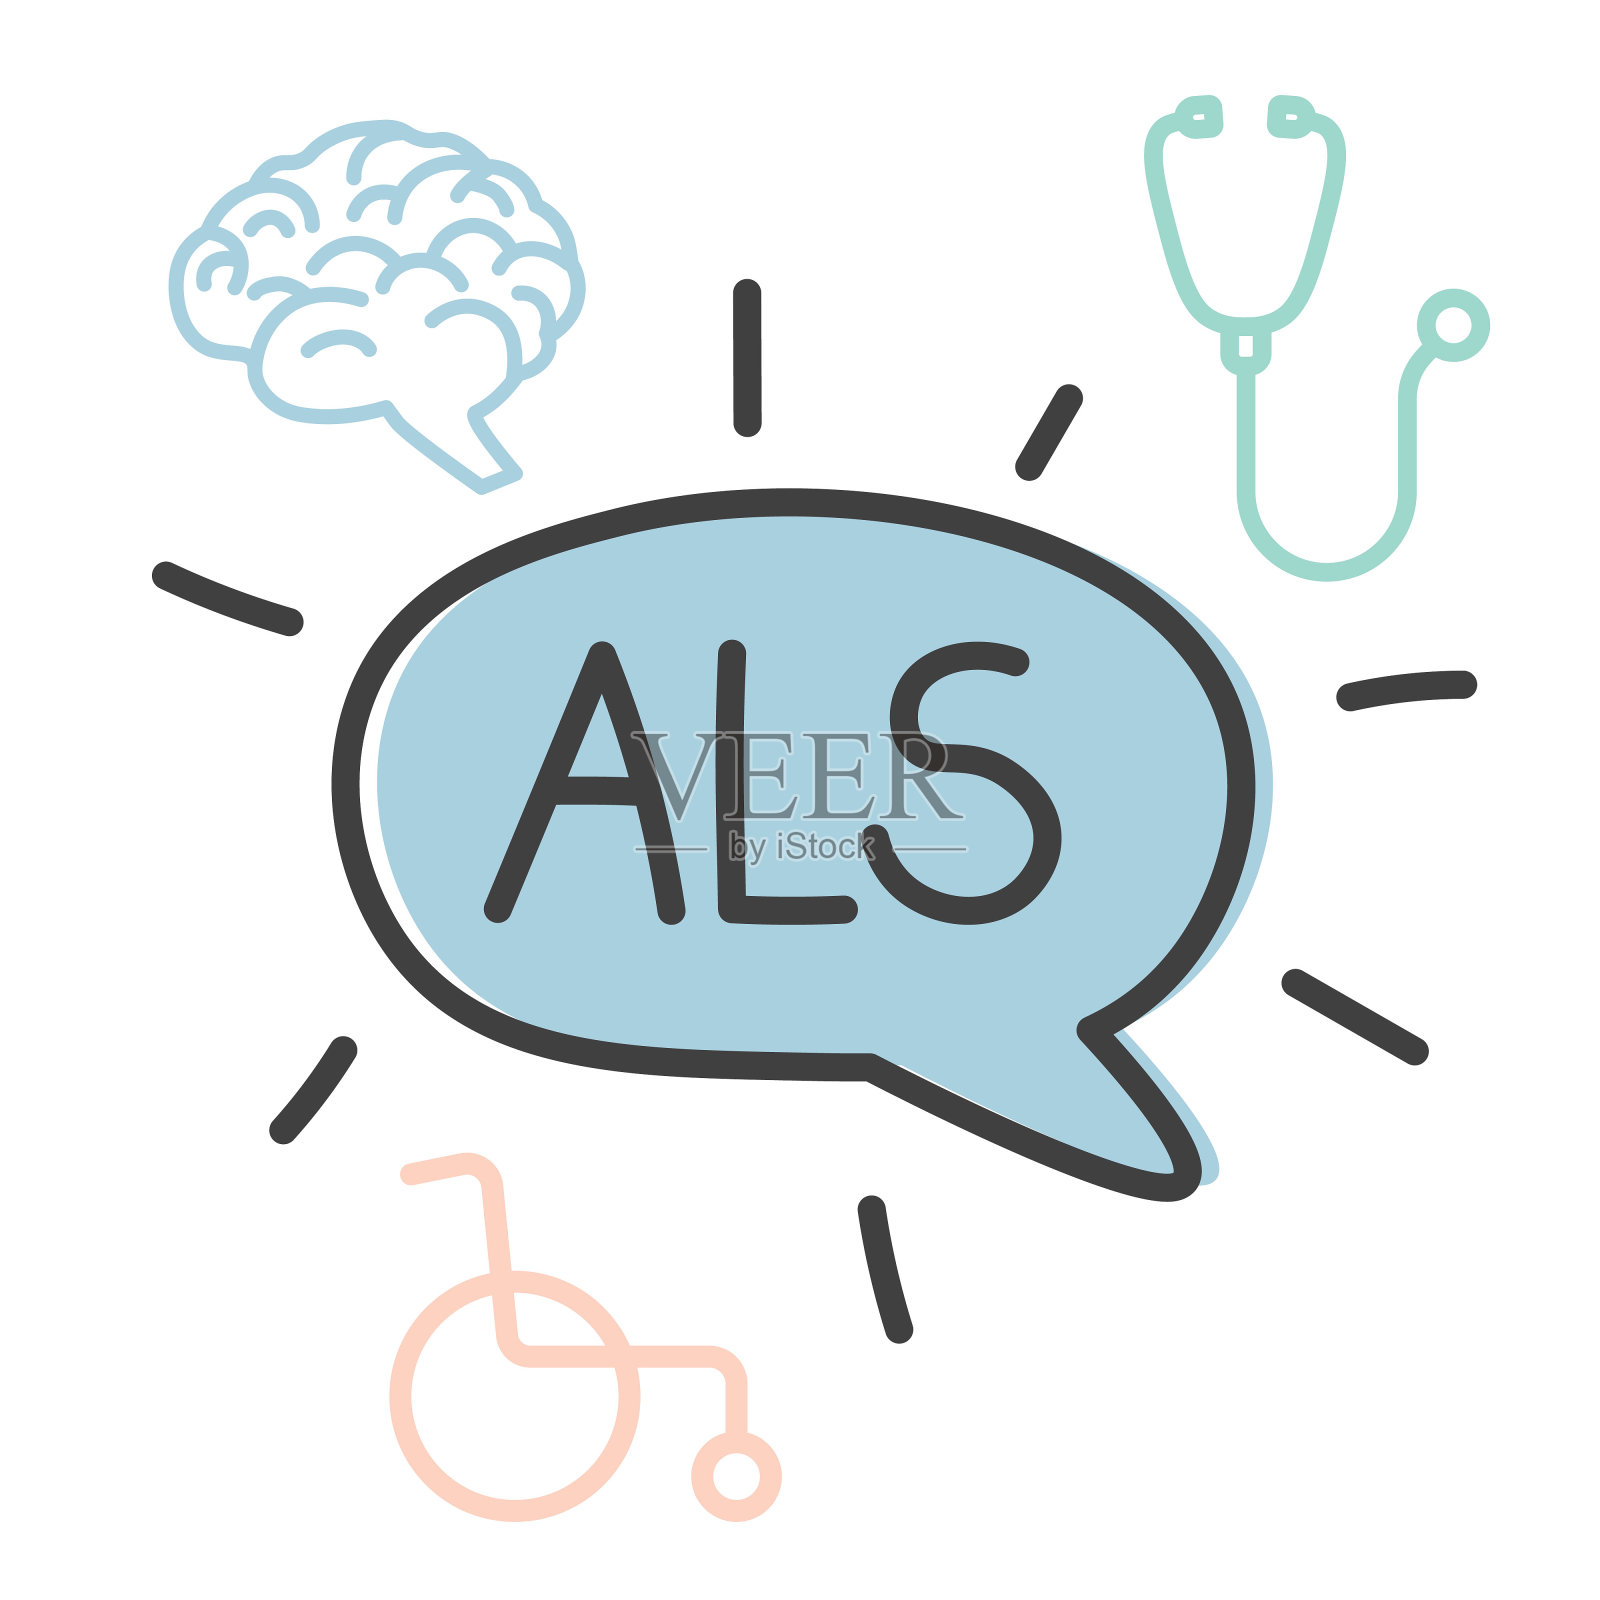 ALS(肌萎缩性侧索硬化症)缩写和相关图标插画图片素材